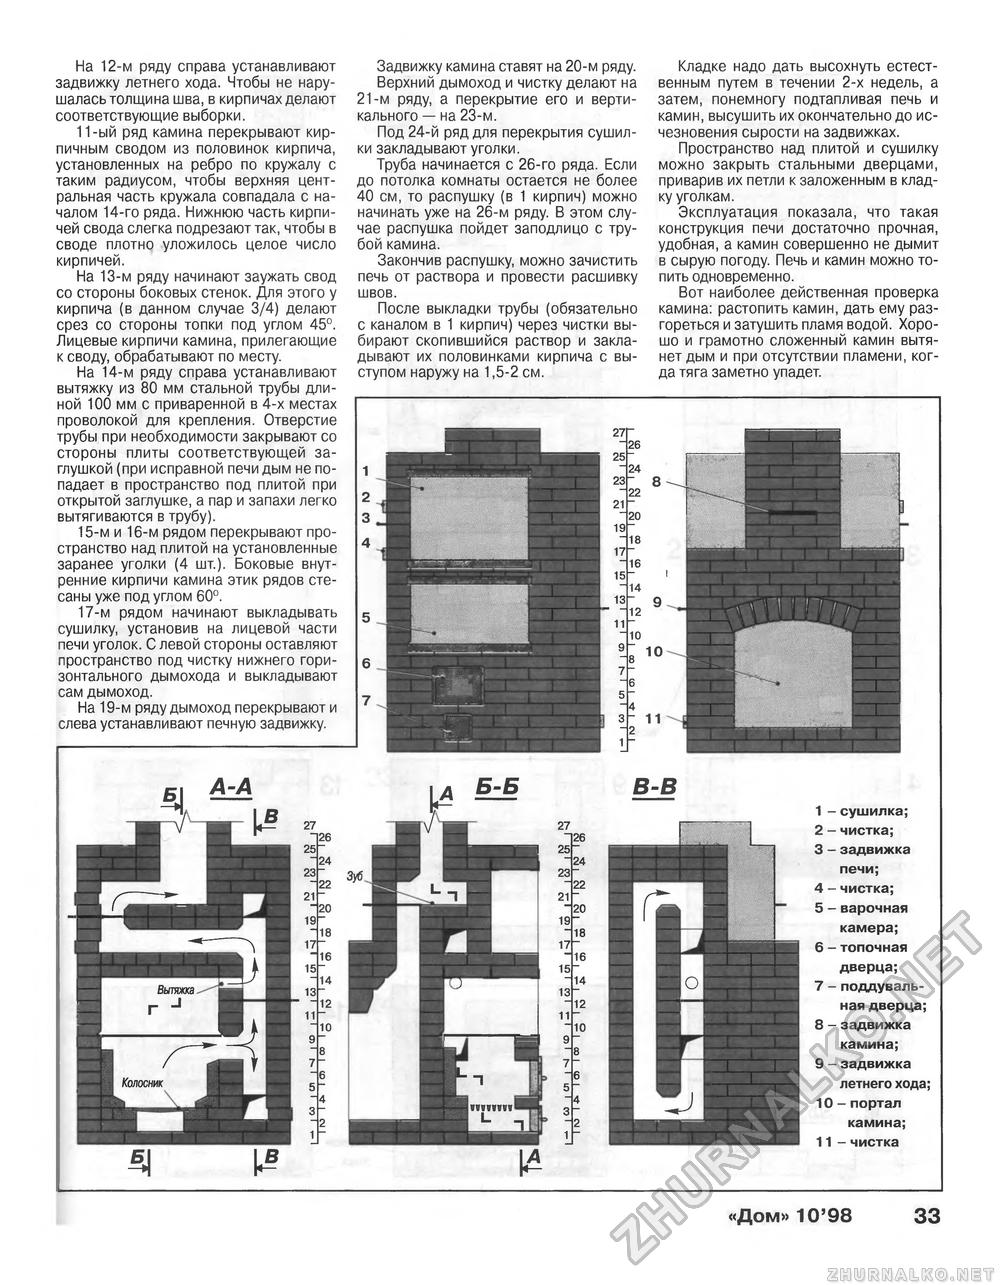 Дом 1998-10, страница 33